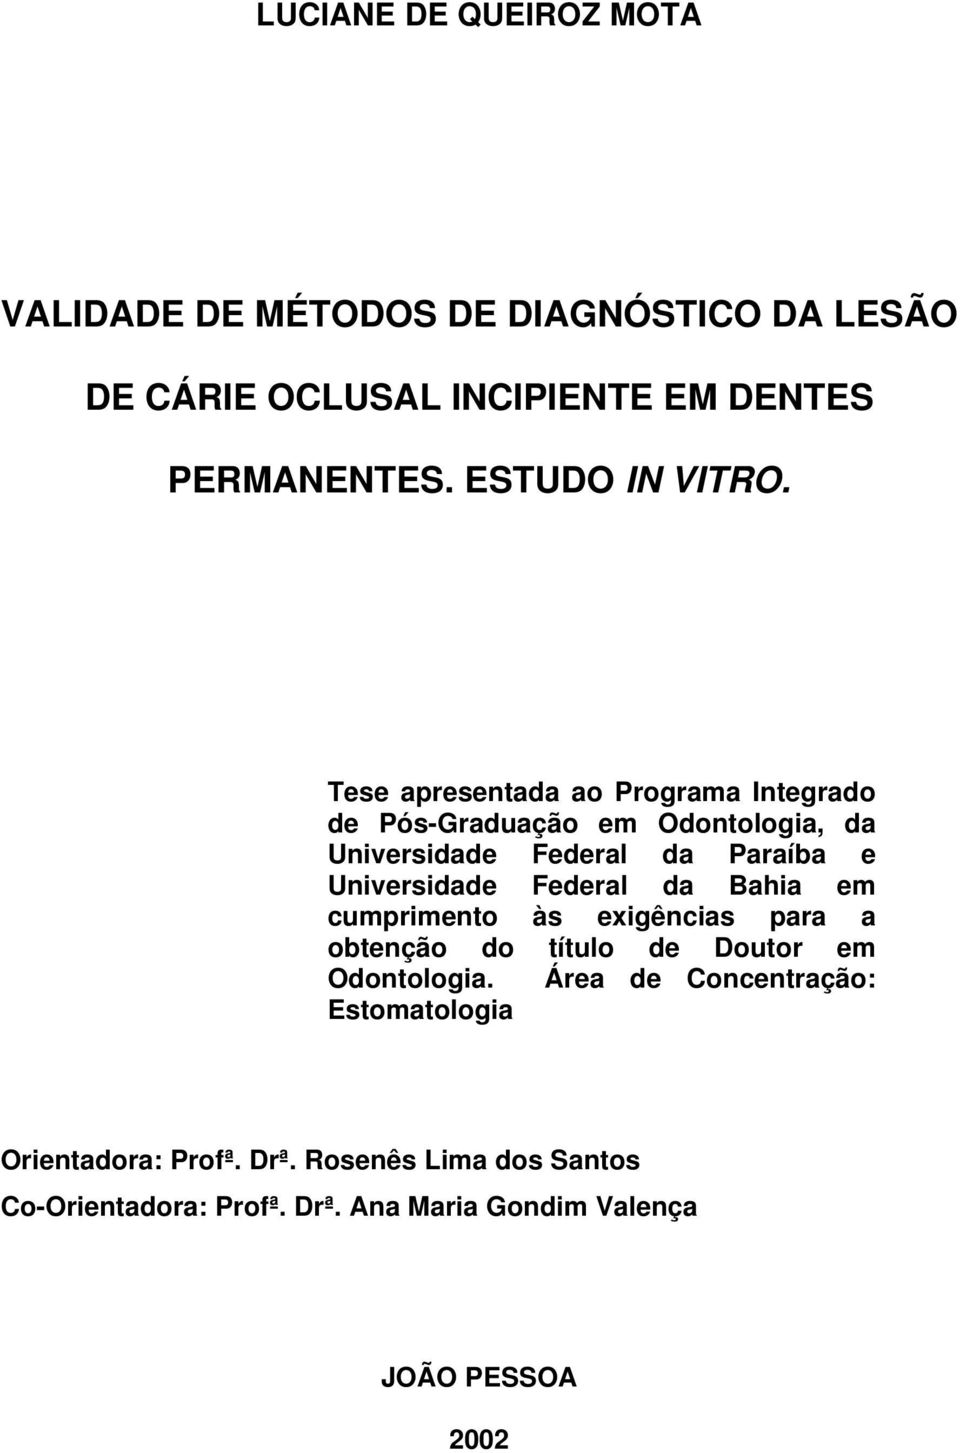 Tese apresentada ao Programa Integrado de Pós-Graduação em Odontologia, da Universidade Federal da Paraíba e Universidade